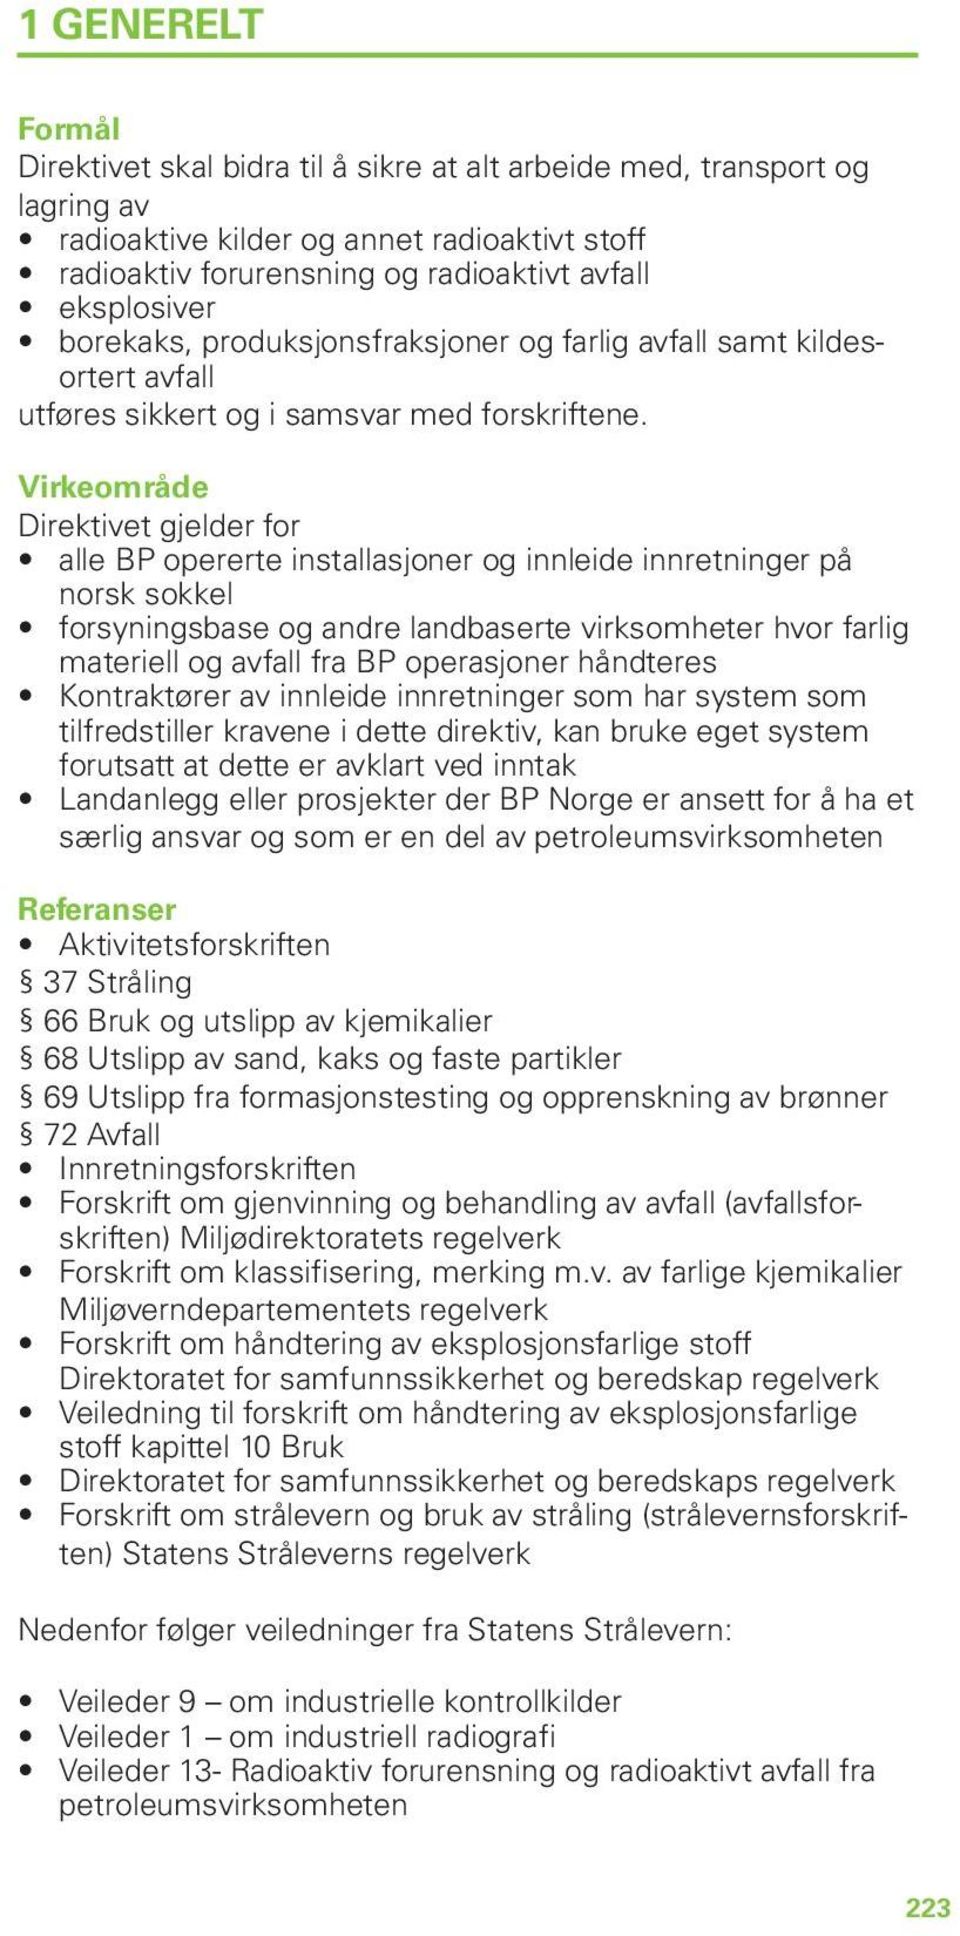 Virkeområde Direktivet gjelder for alle BP opererte installasjoner og innleide innretninger på norsk sokkel forsyningsbase og andre landbaserte virksomheter hvor farlig materiell og avfall fra BP